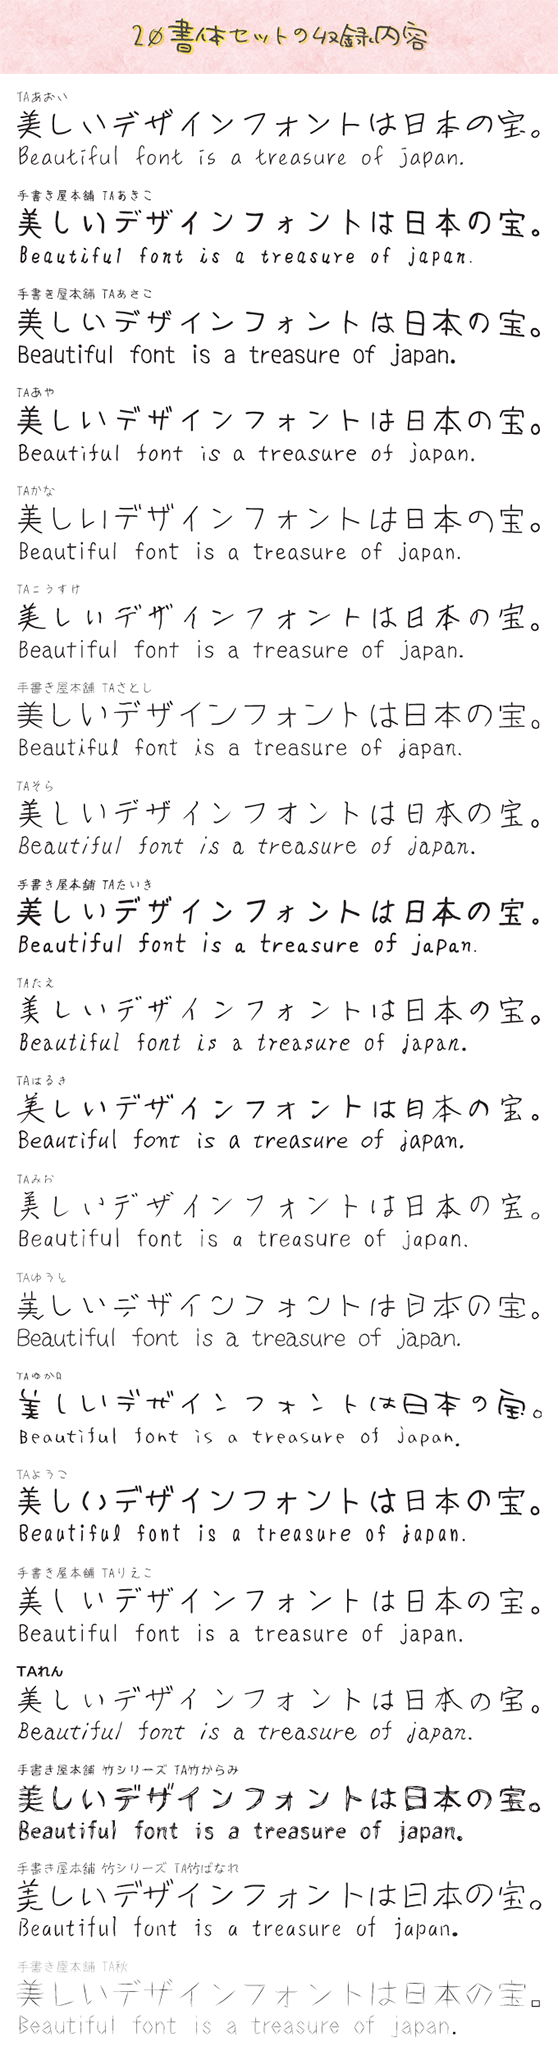 ナチュラルでおしゃれな手書き日本語フォント20書体セット